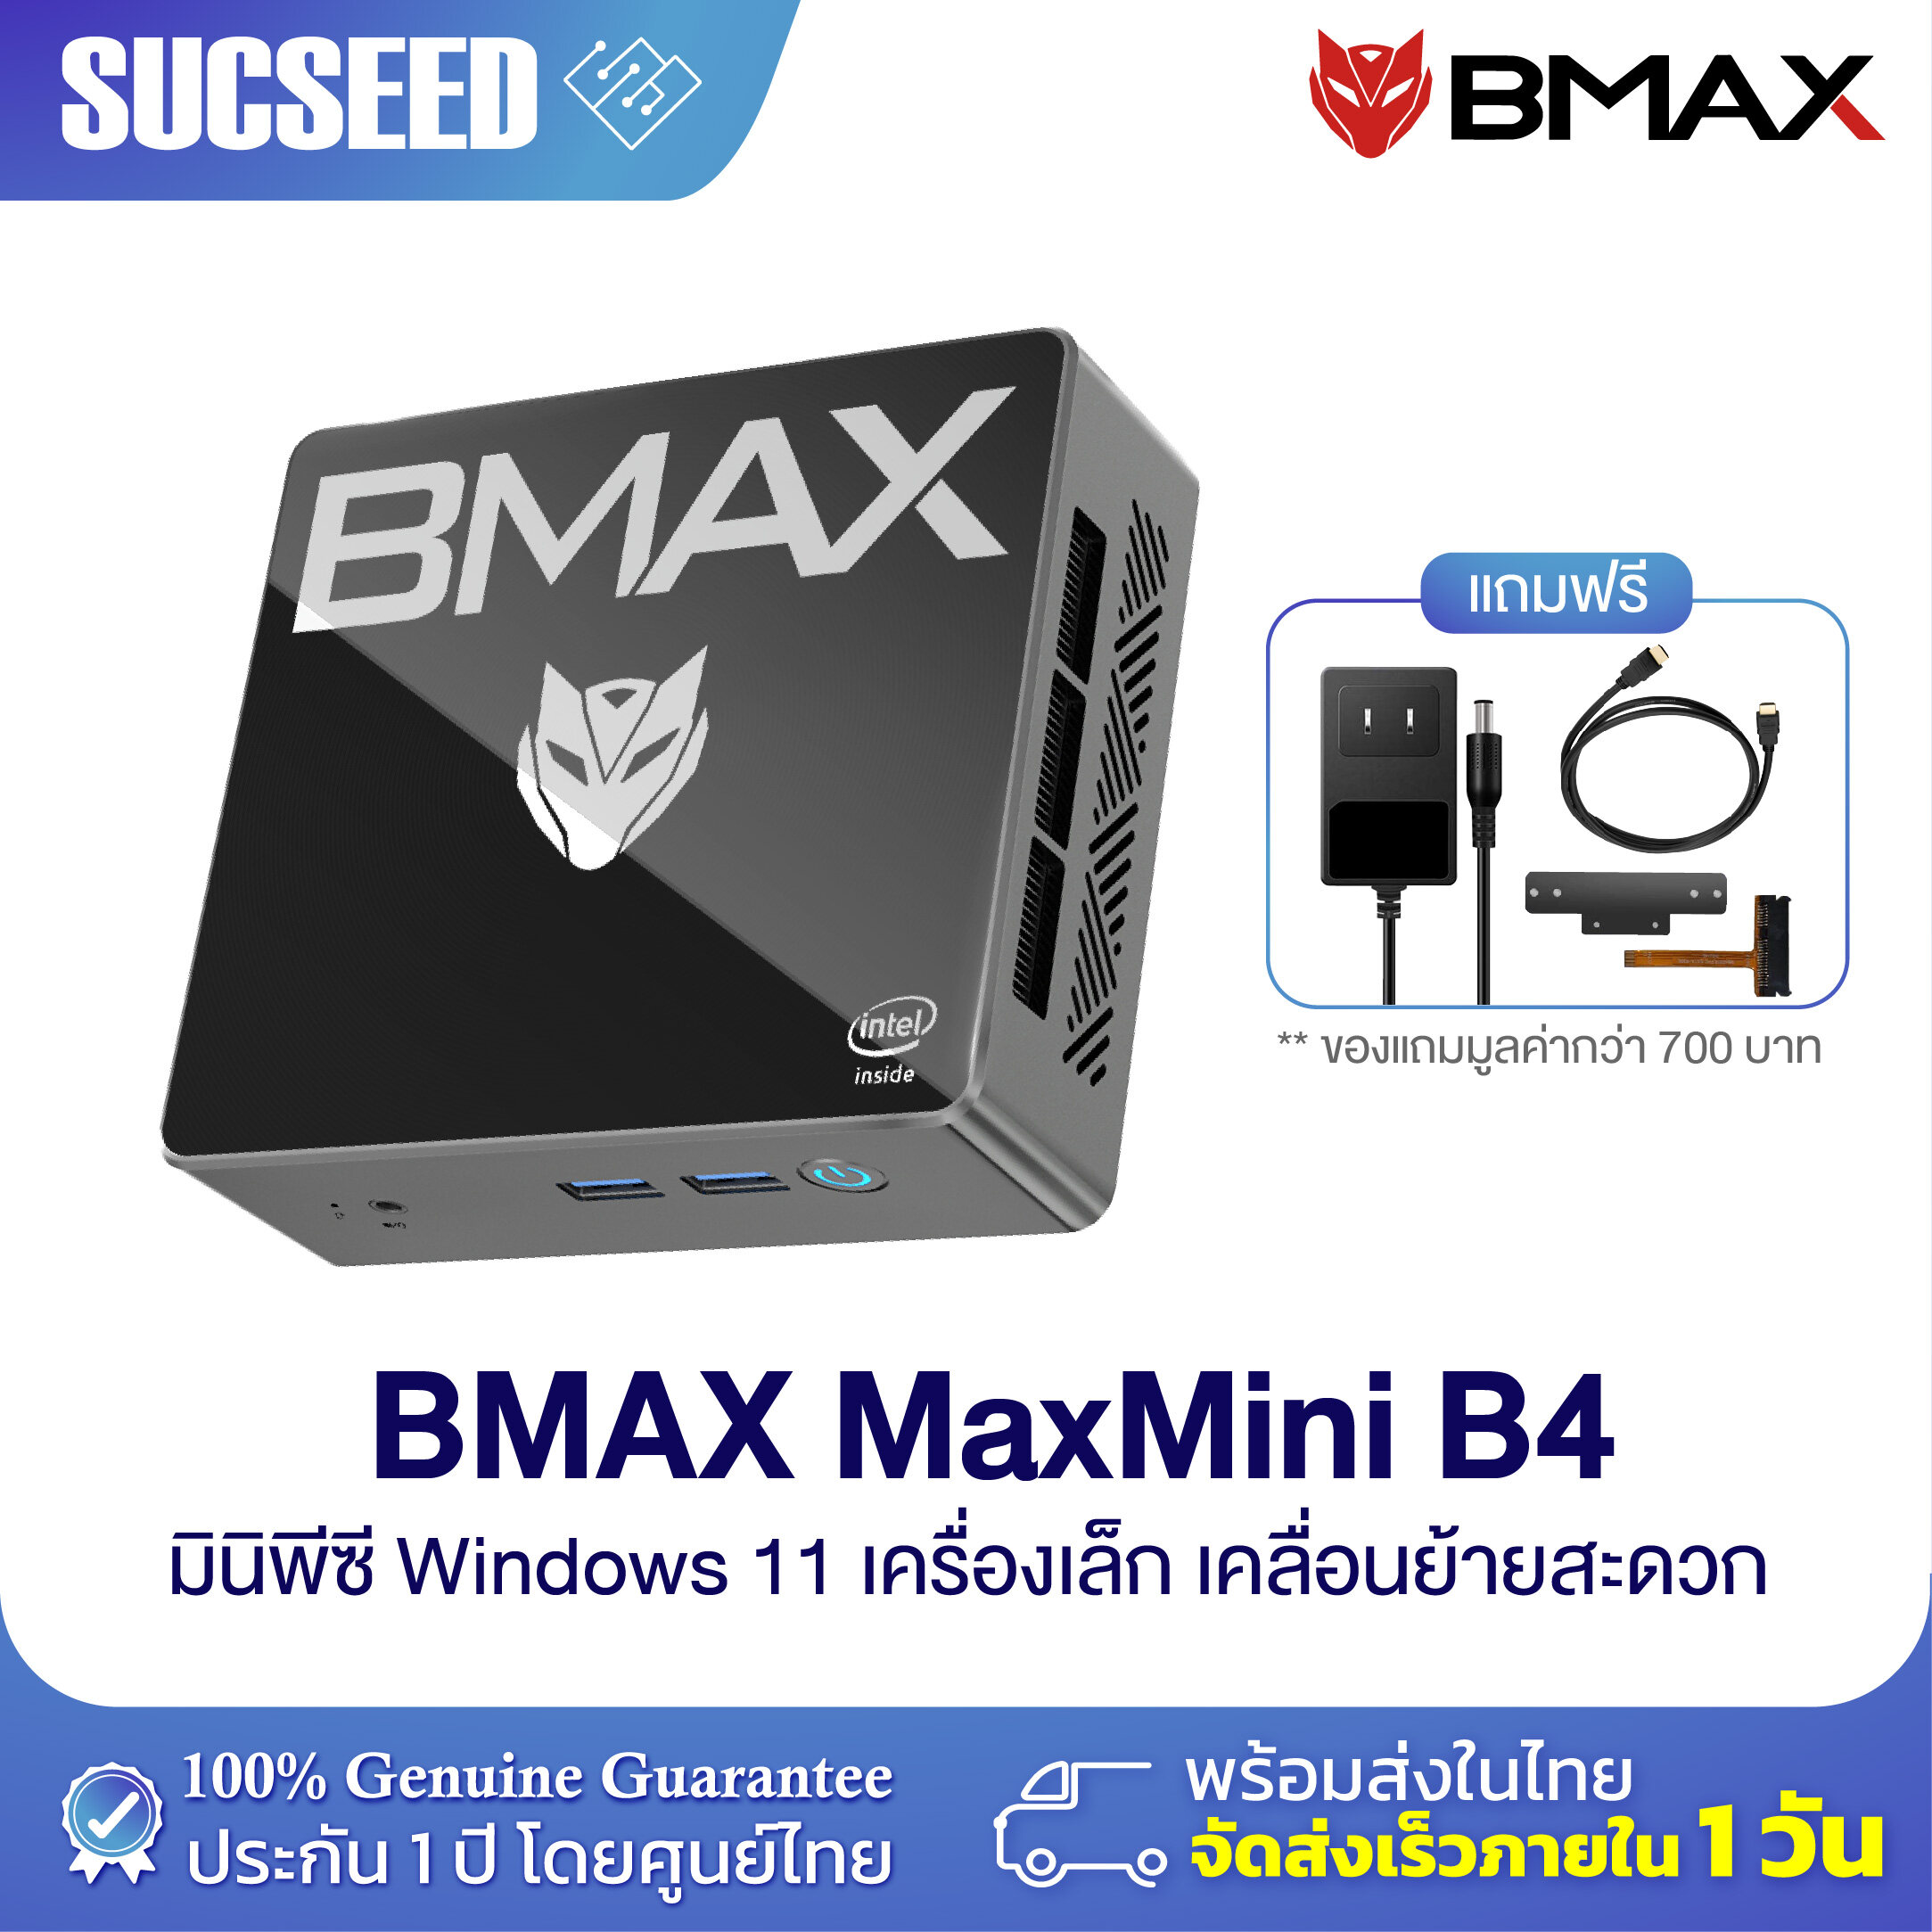 BMAX Thailand - ‼️ New Arrival Maxmini B7 Pro 🤩 มากับ Core